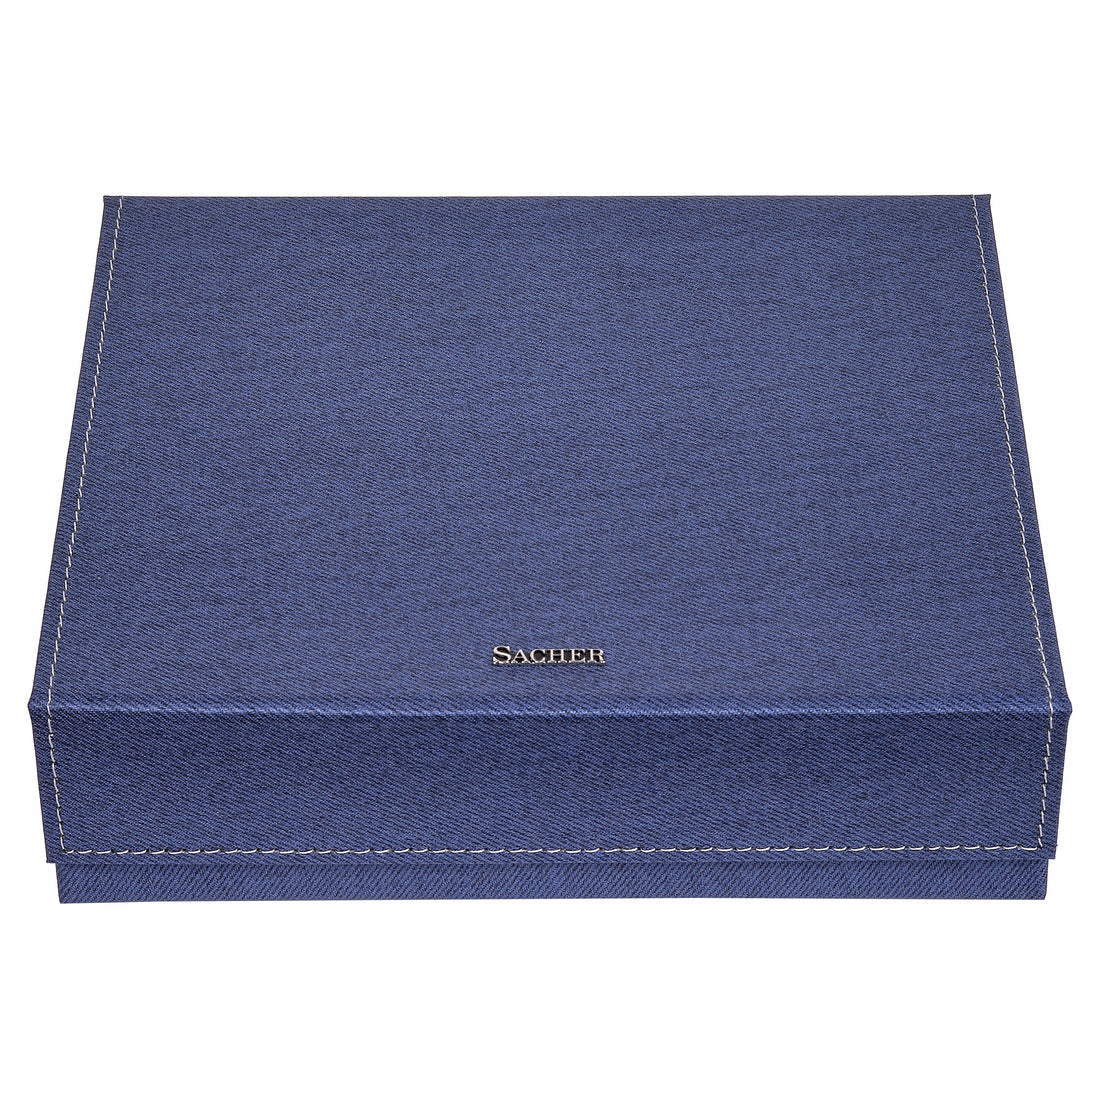 Schmuckbox Nora denim blau – SACHER Store Offizieller 1846 / Manufaktur 